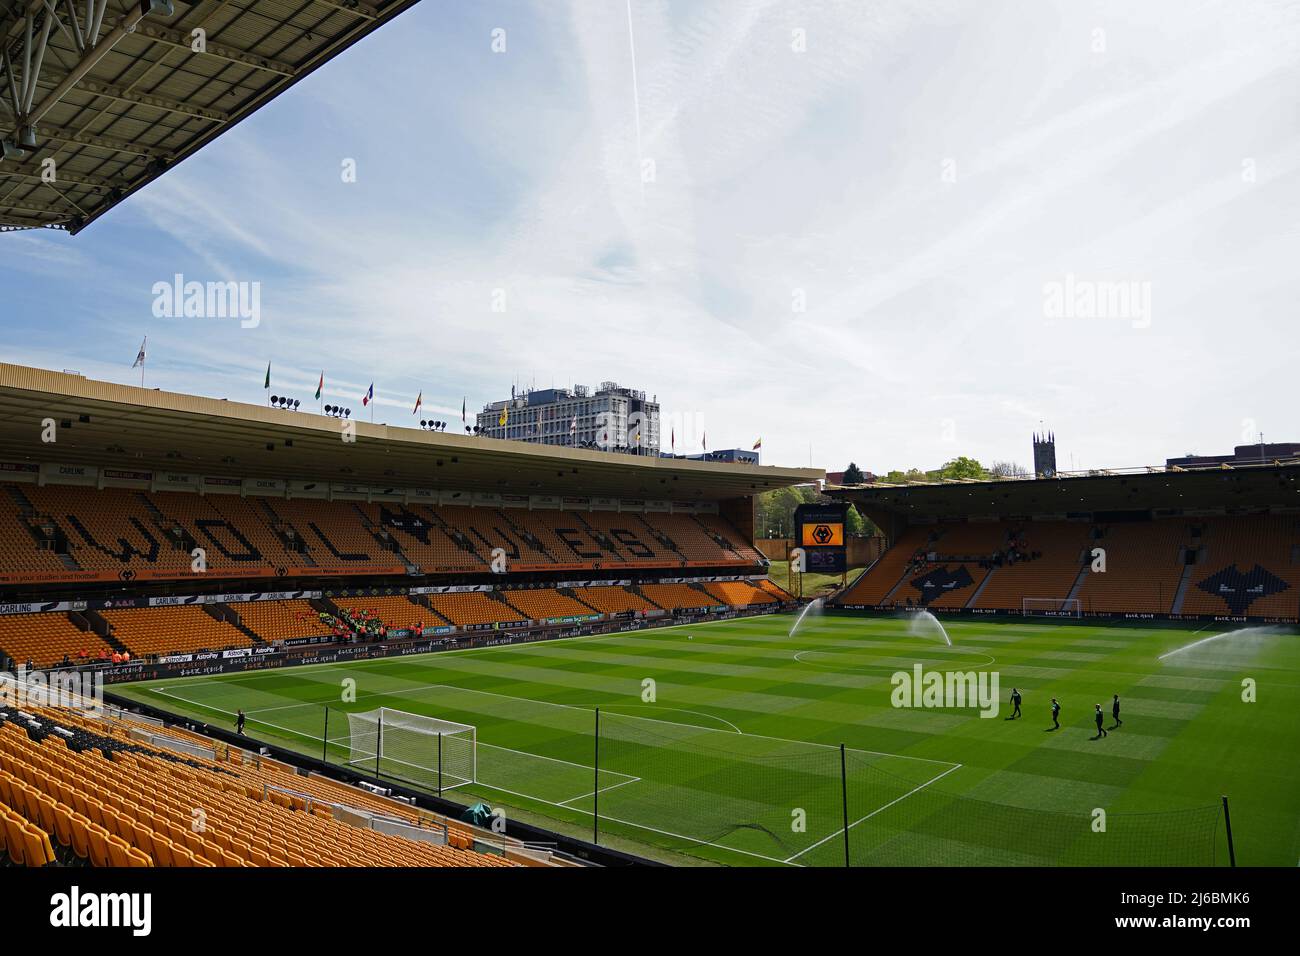 Una visión general del terreno antes del partido de la Premier League en el estadio Molineux, Wolverhampton. Fecha de la foto: Sábado 30 de abril de 2022. Foto de stock